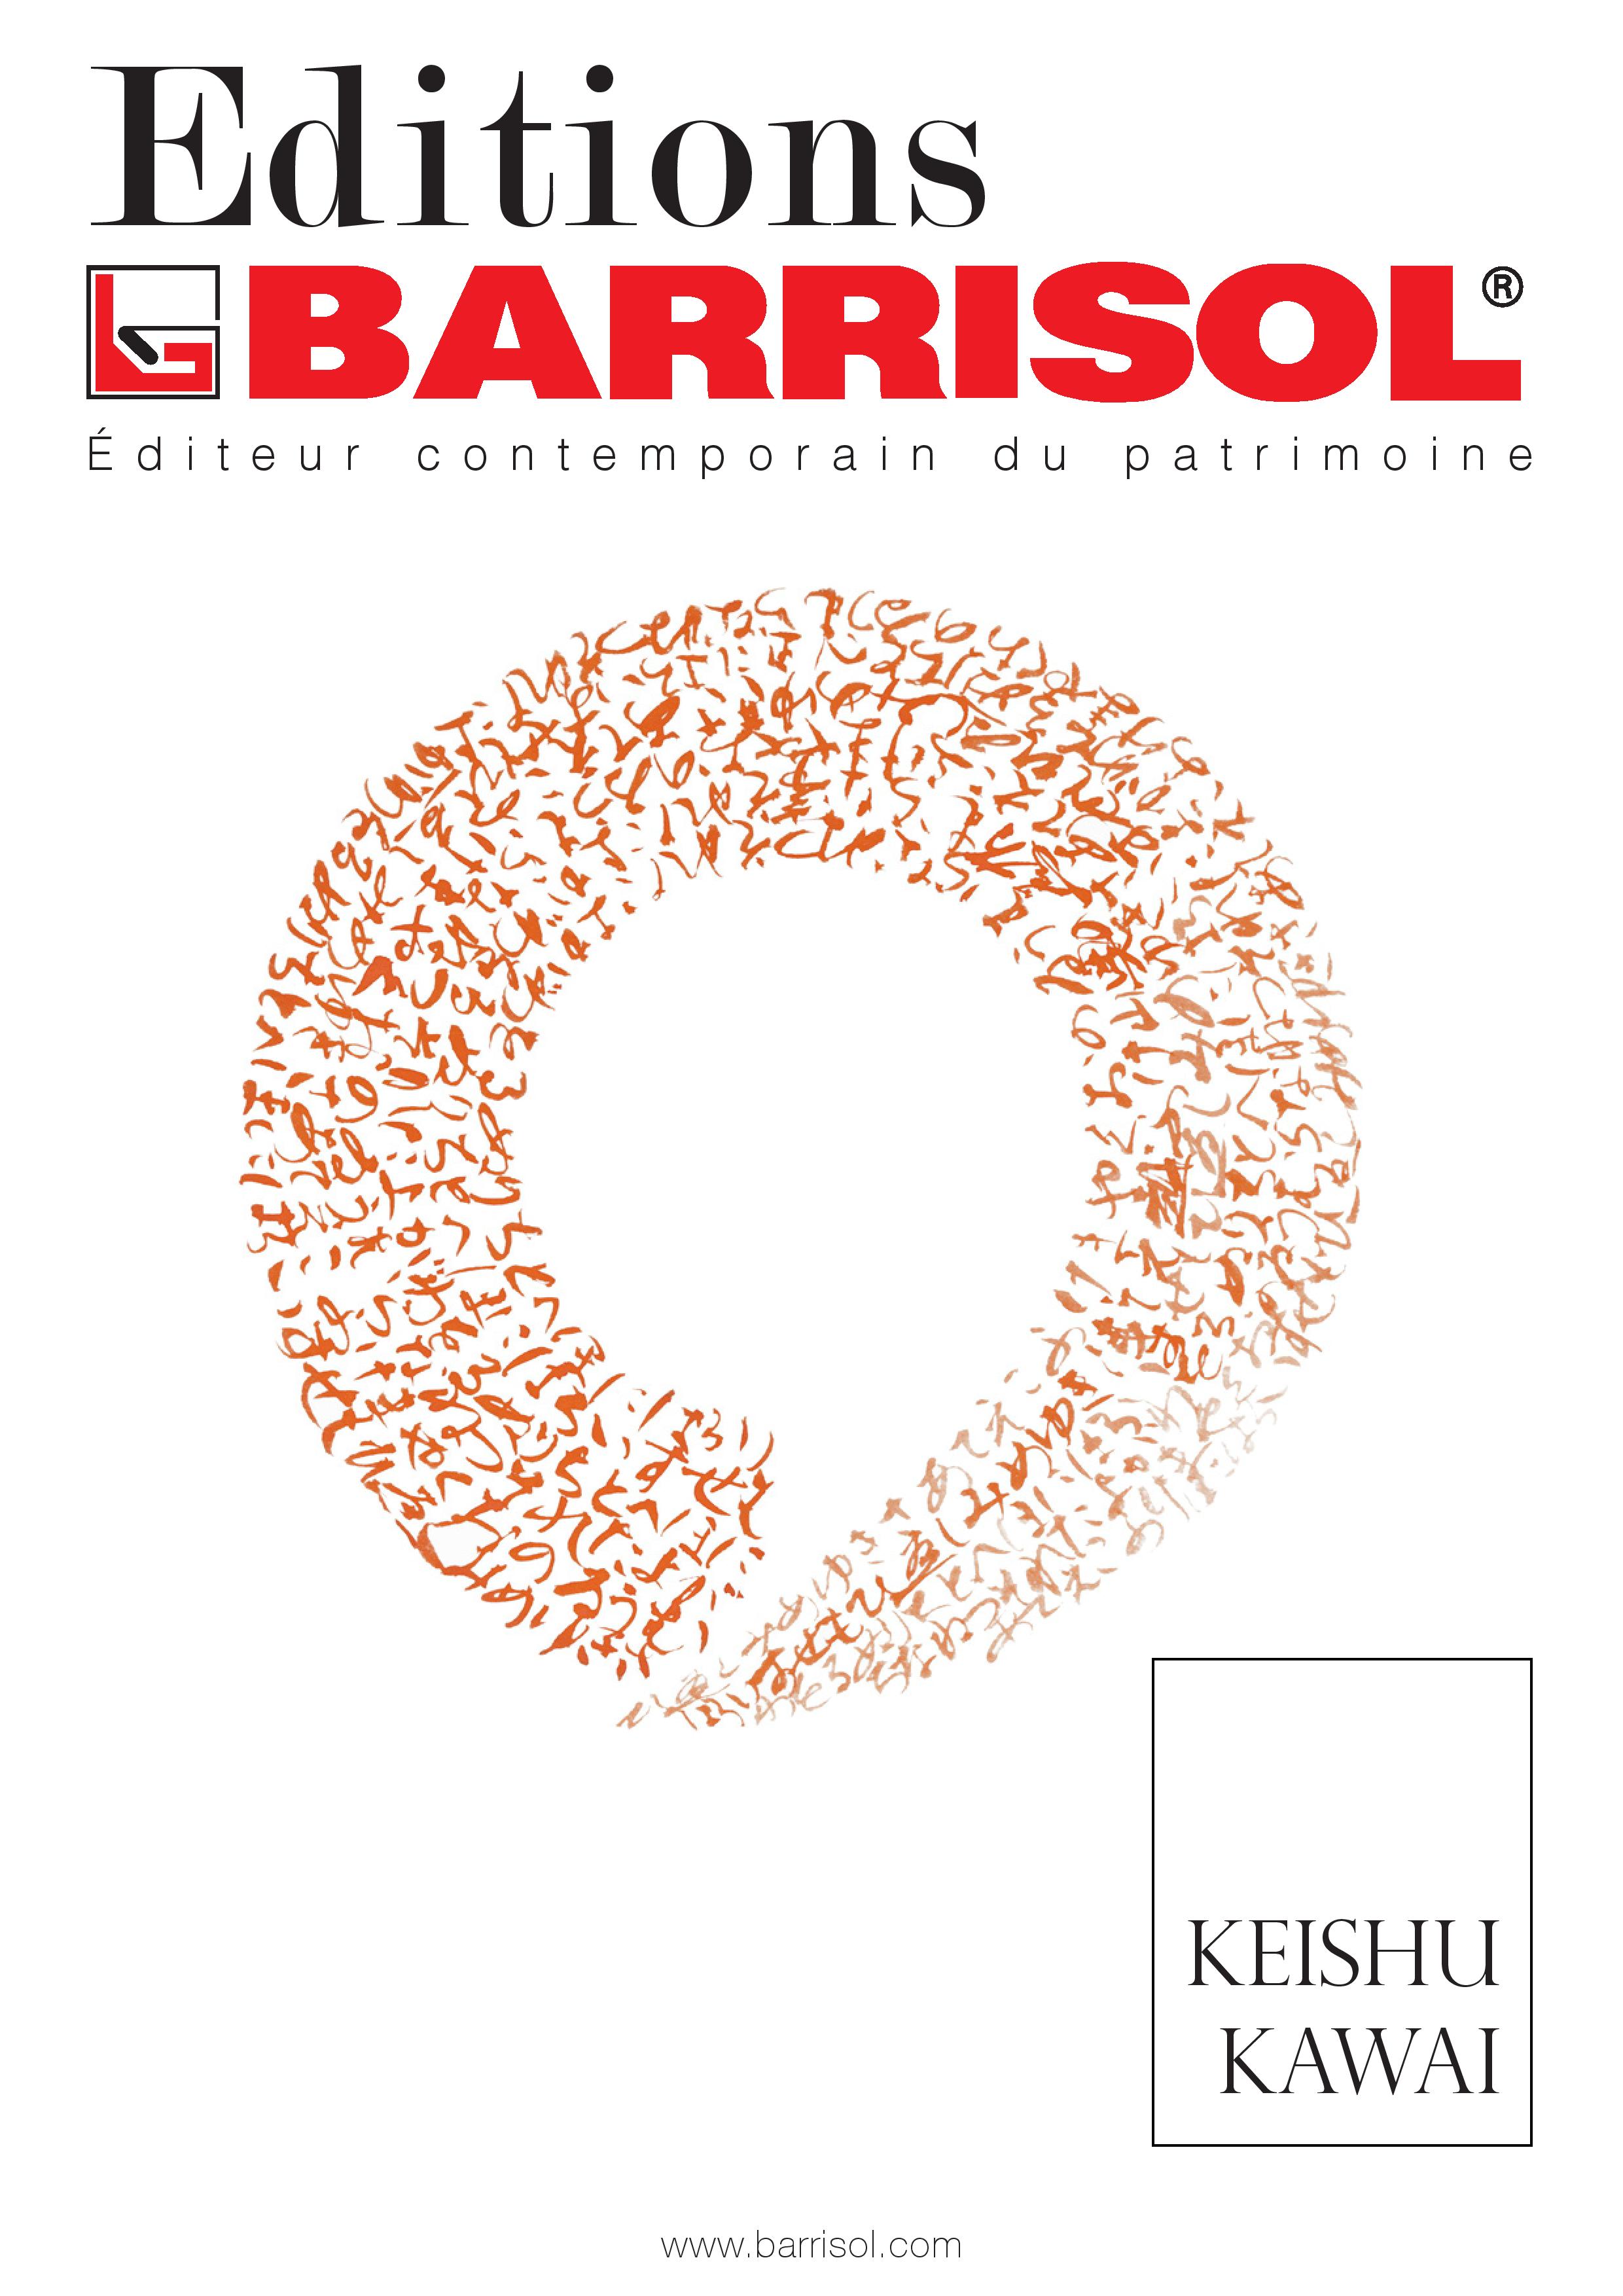 Editions BARRISOL - Brochure Keishu Kawai